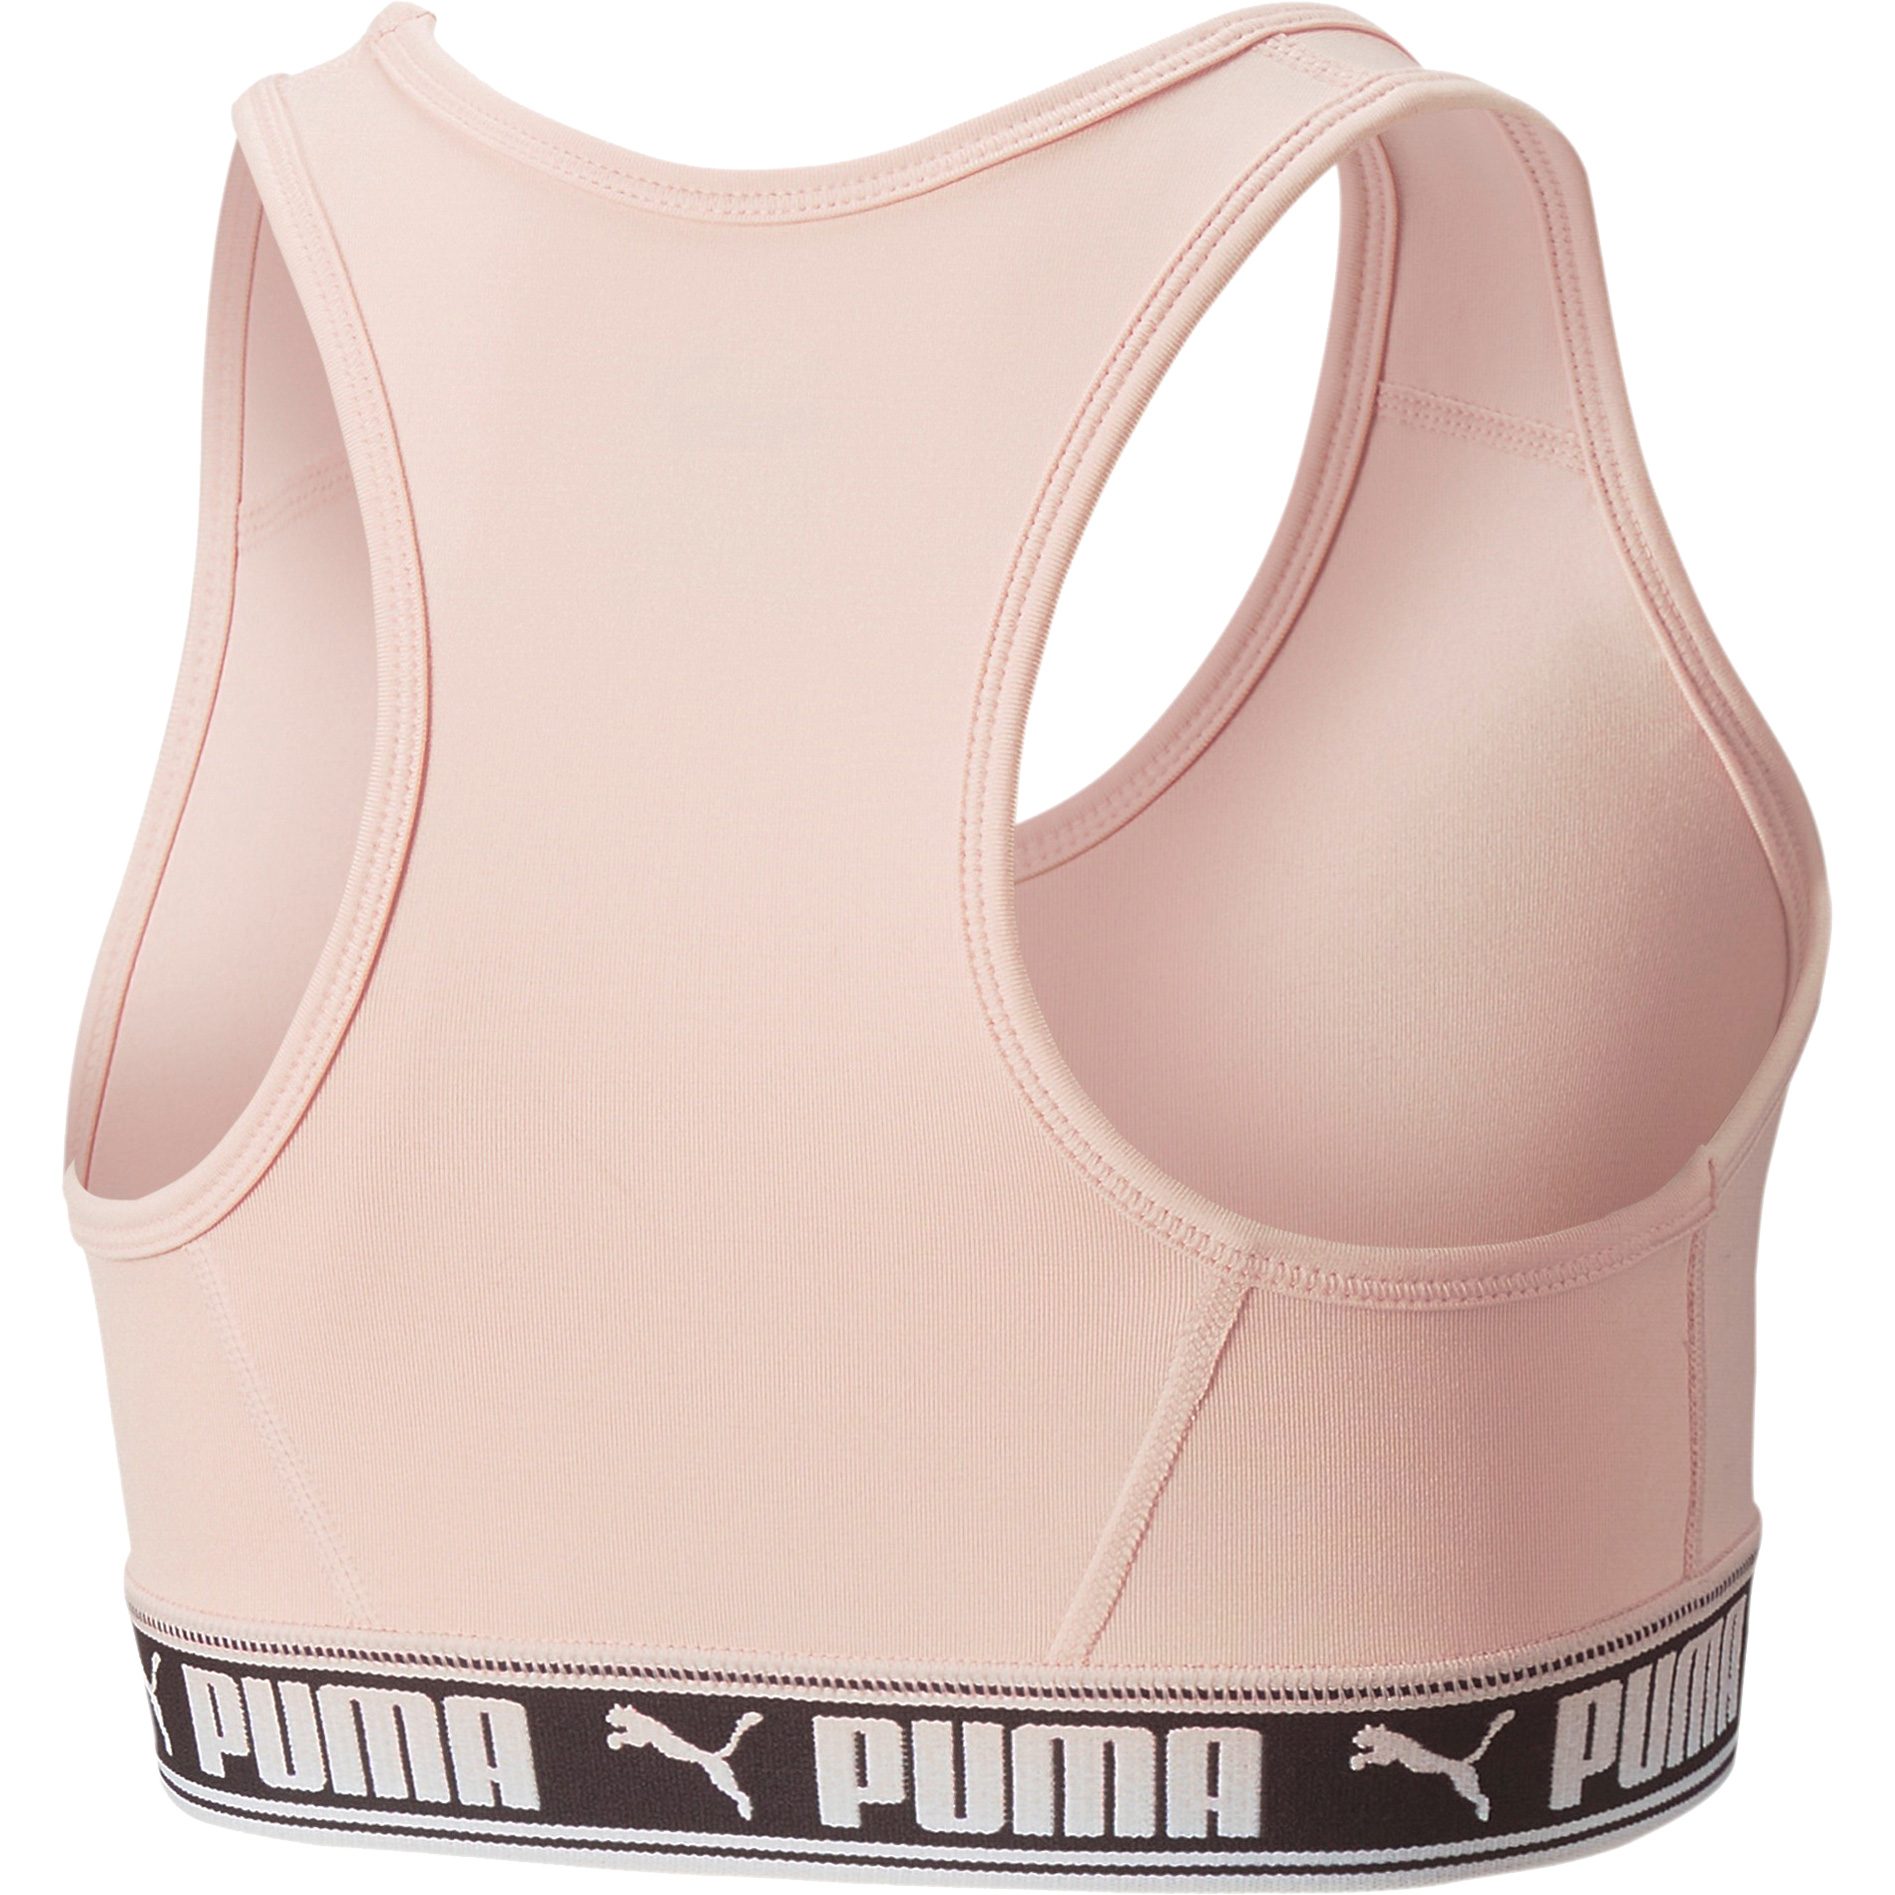 Puma - Strong Sports Bra Girls puma black at Sport Bittl Shop